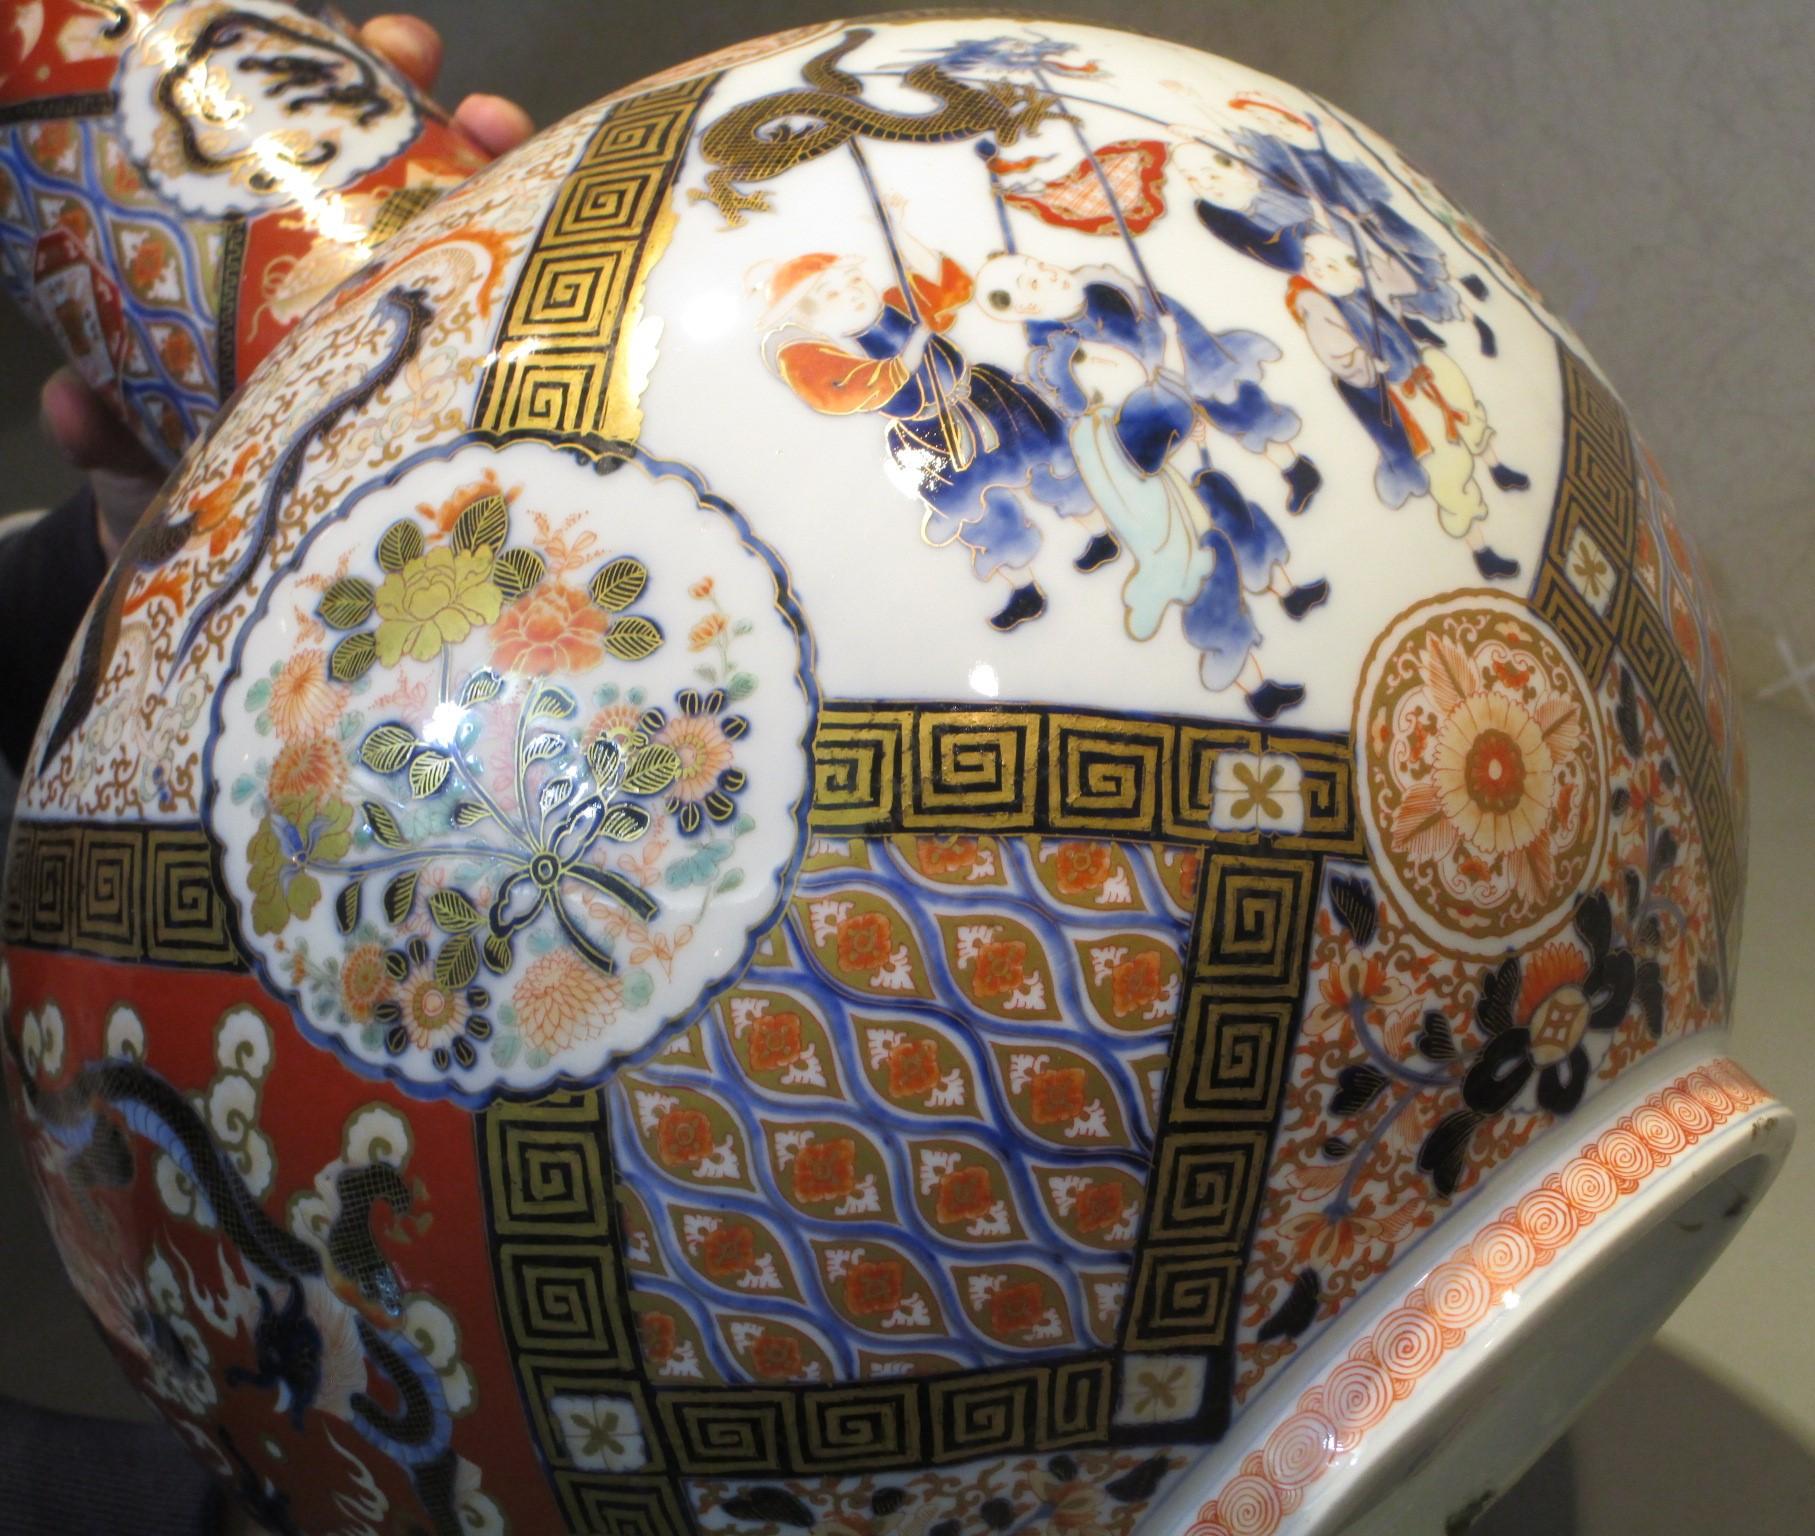 Hervorragendes Paar großer japanischer Porzellanvasen aus der Meiji-Zeit, signiert von Fukagawa (um 1900). Aufwendig handbemalt in kobaltblauer Unterglasur mit polychromer und goldener Überglasur auf einem atemberaubenden flaschenförmigen Korpus mit